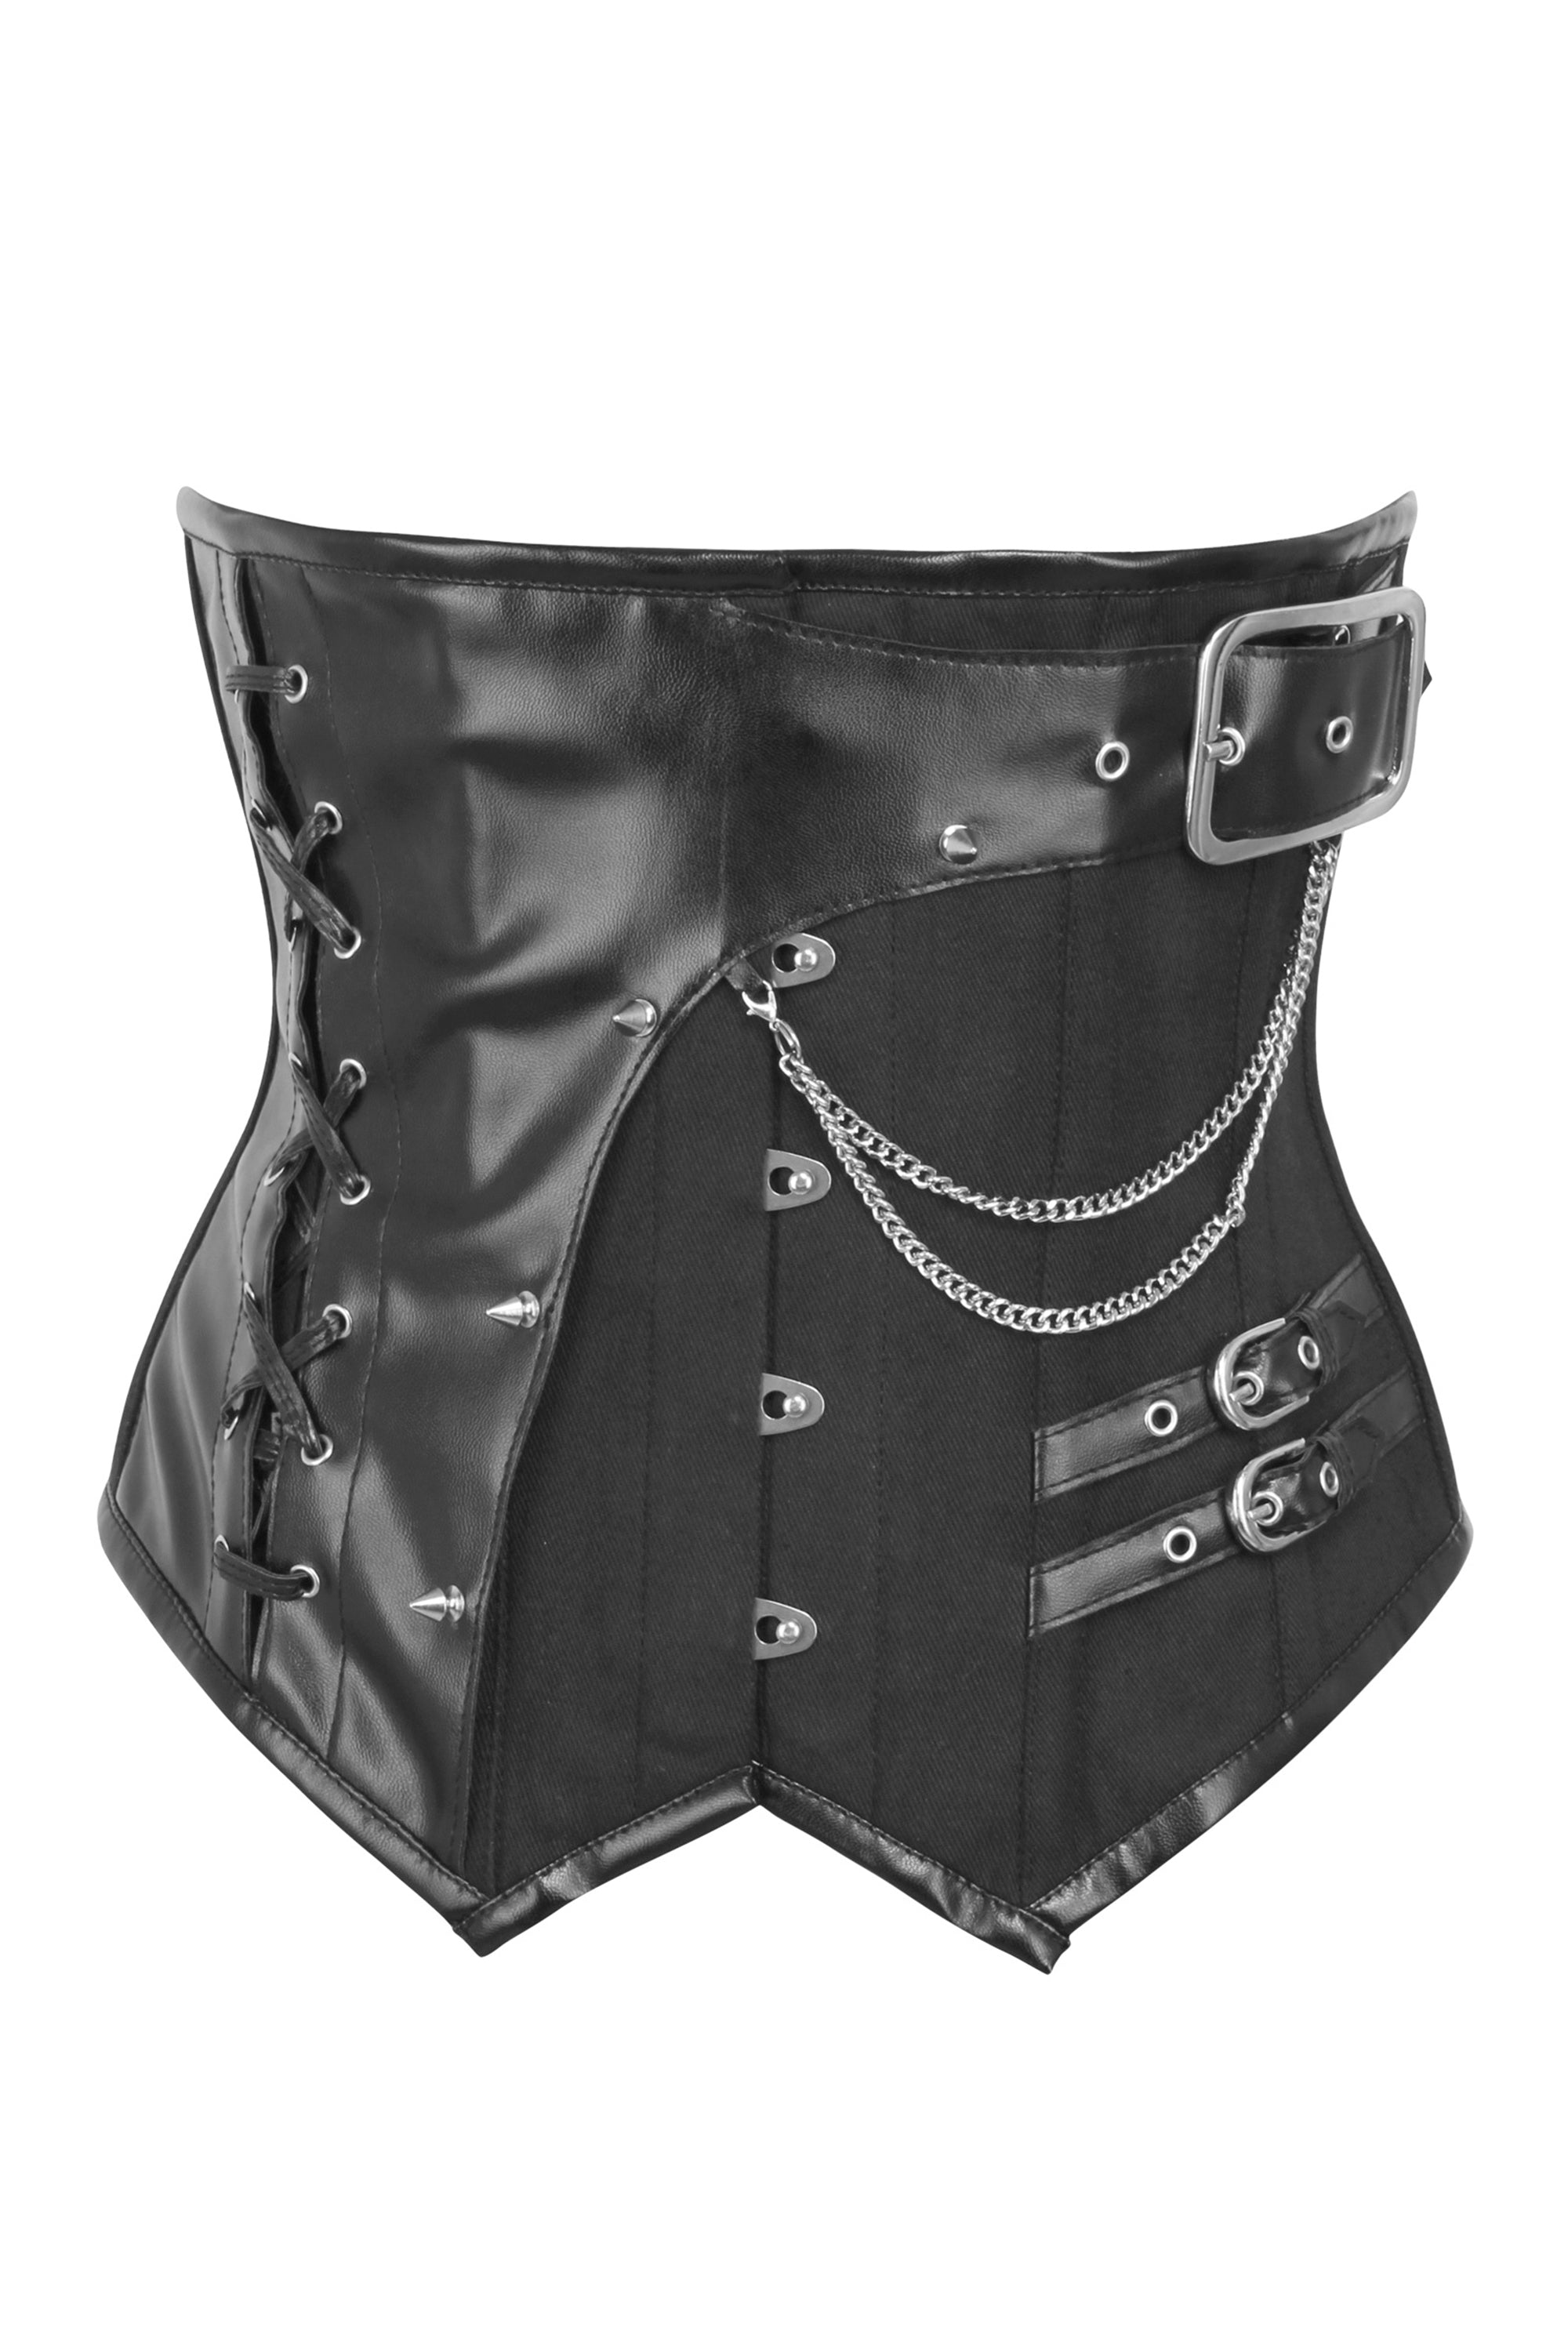 https://corset-story.com/cdn/shop/products/MY-2161.jpg?v=1698852203